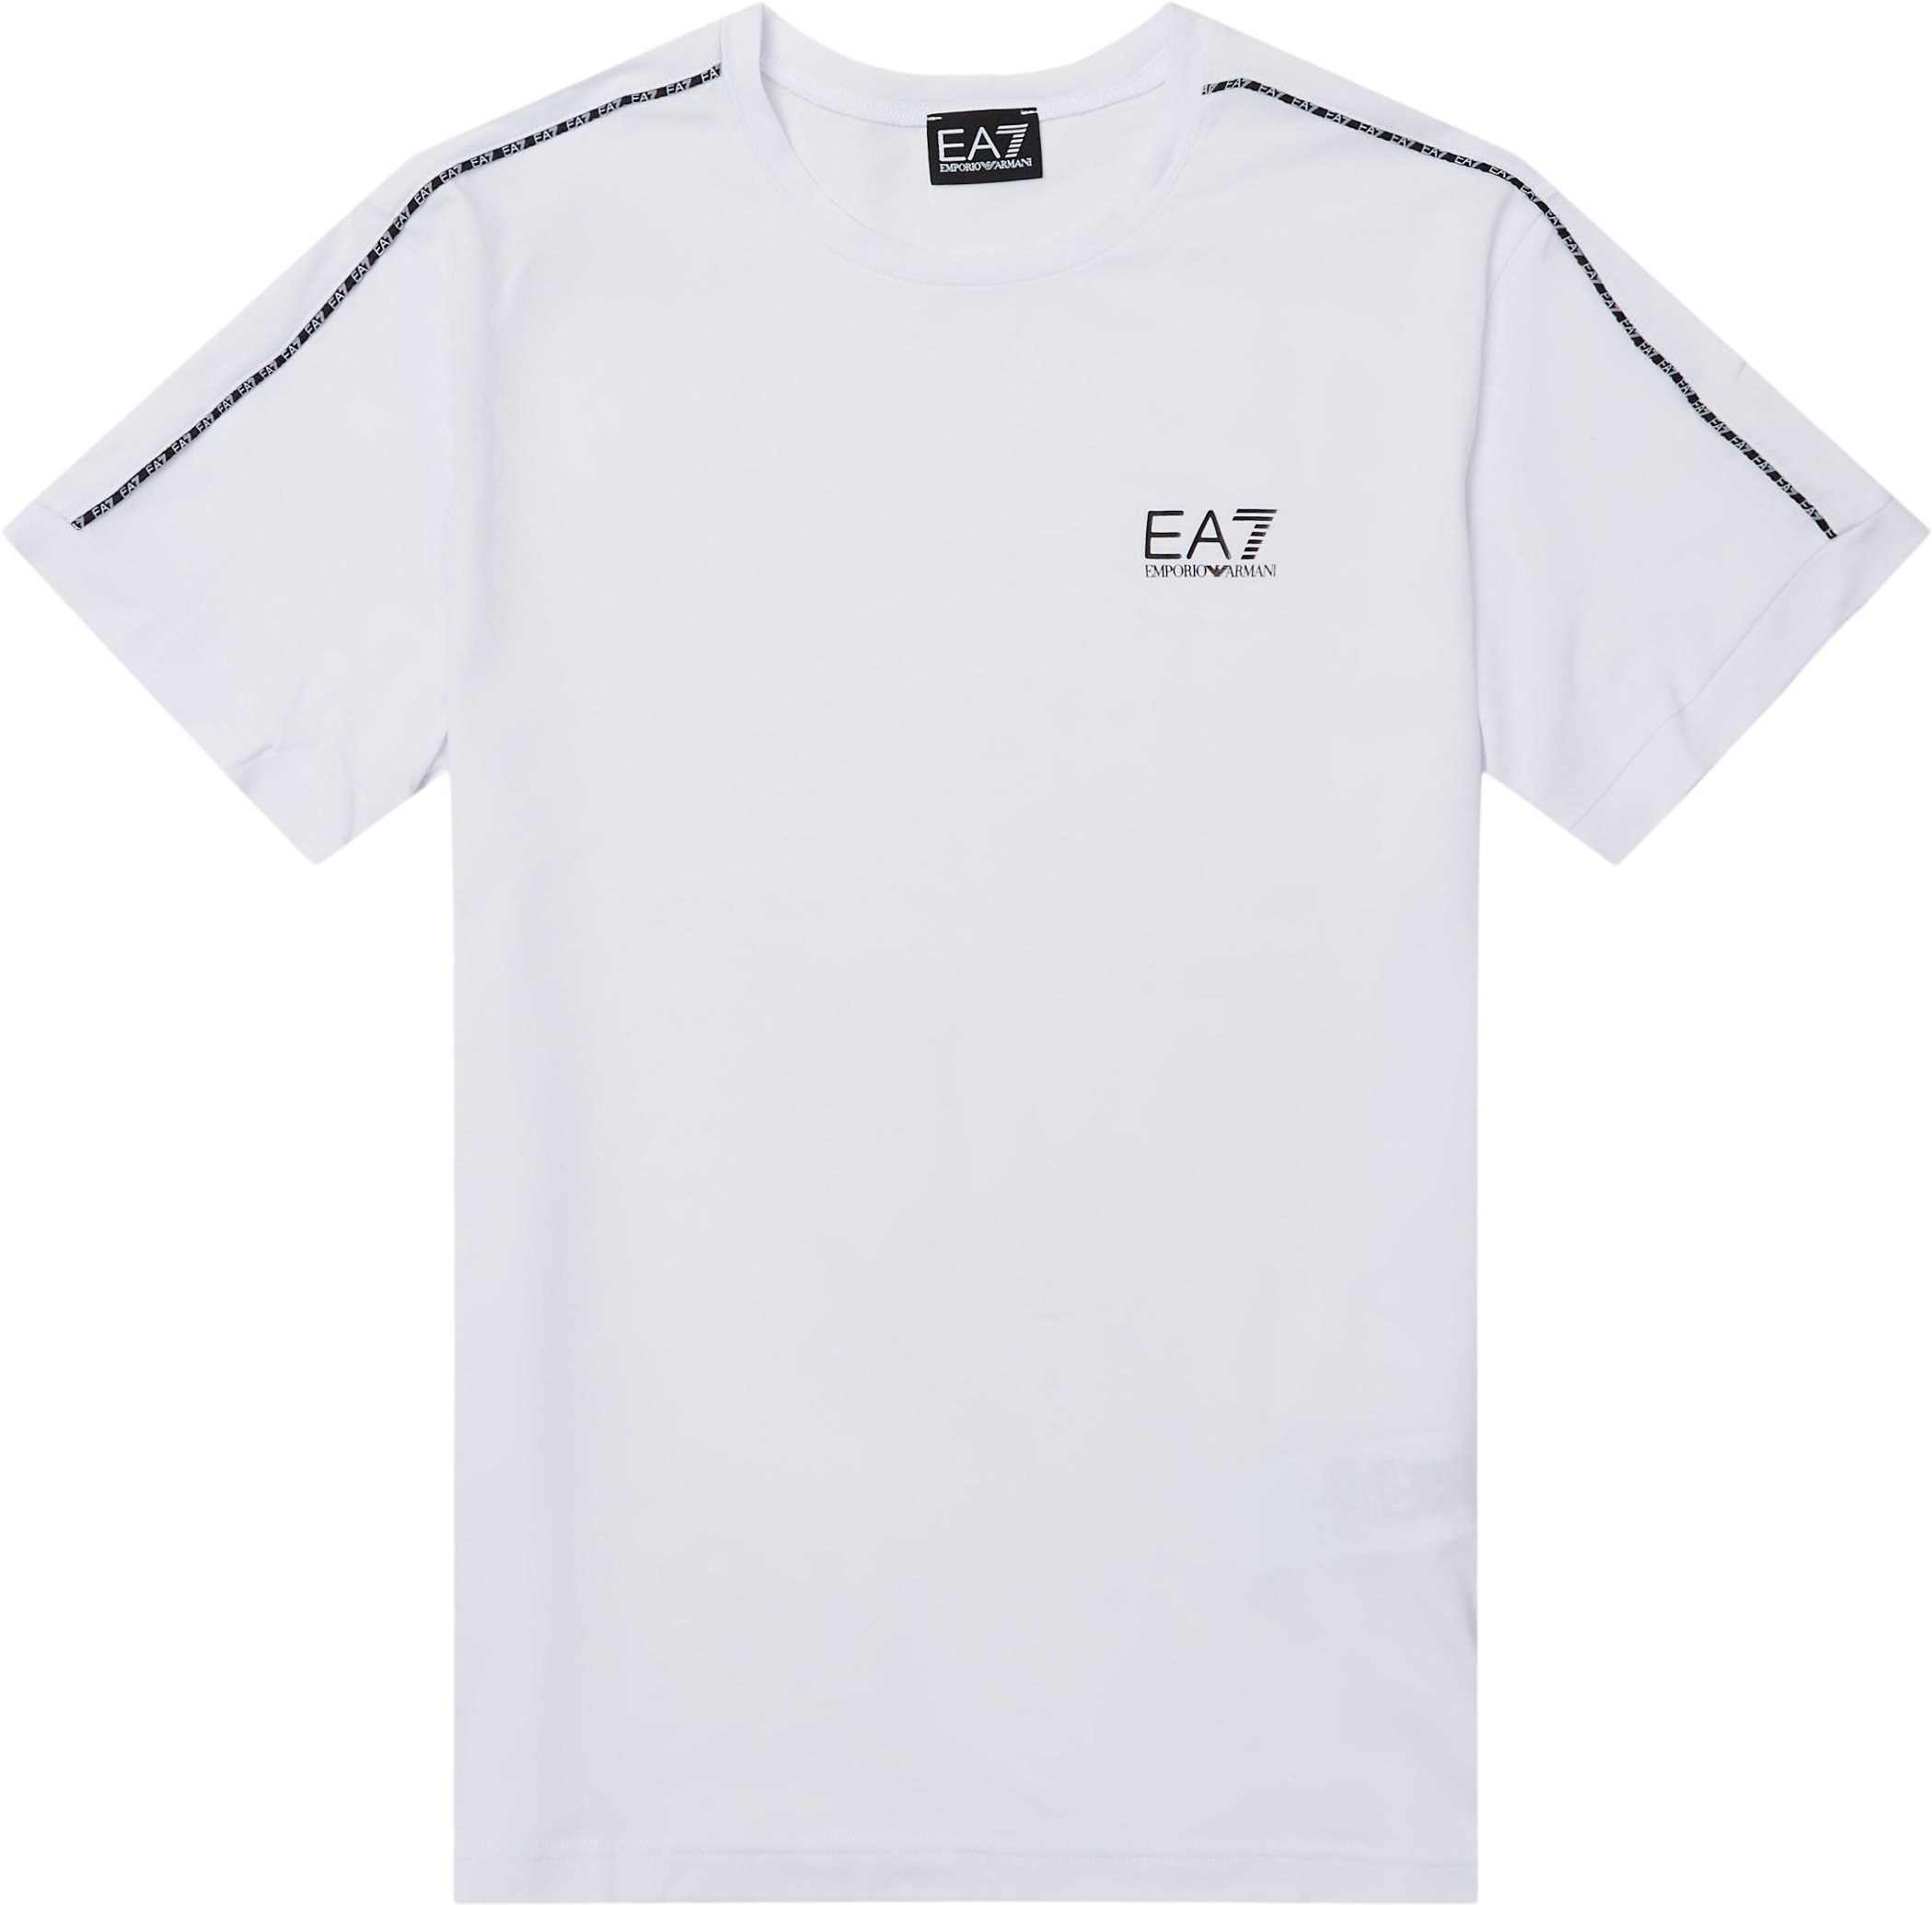 Pjfuz-3lpt31 Tee - T-shirts - Regular fit - White